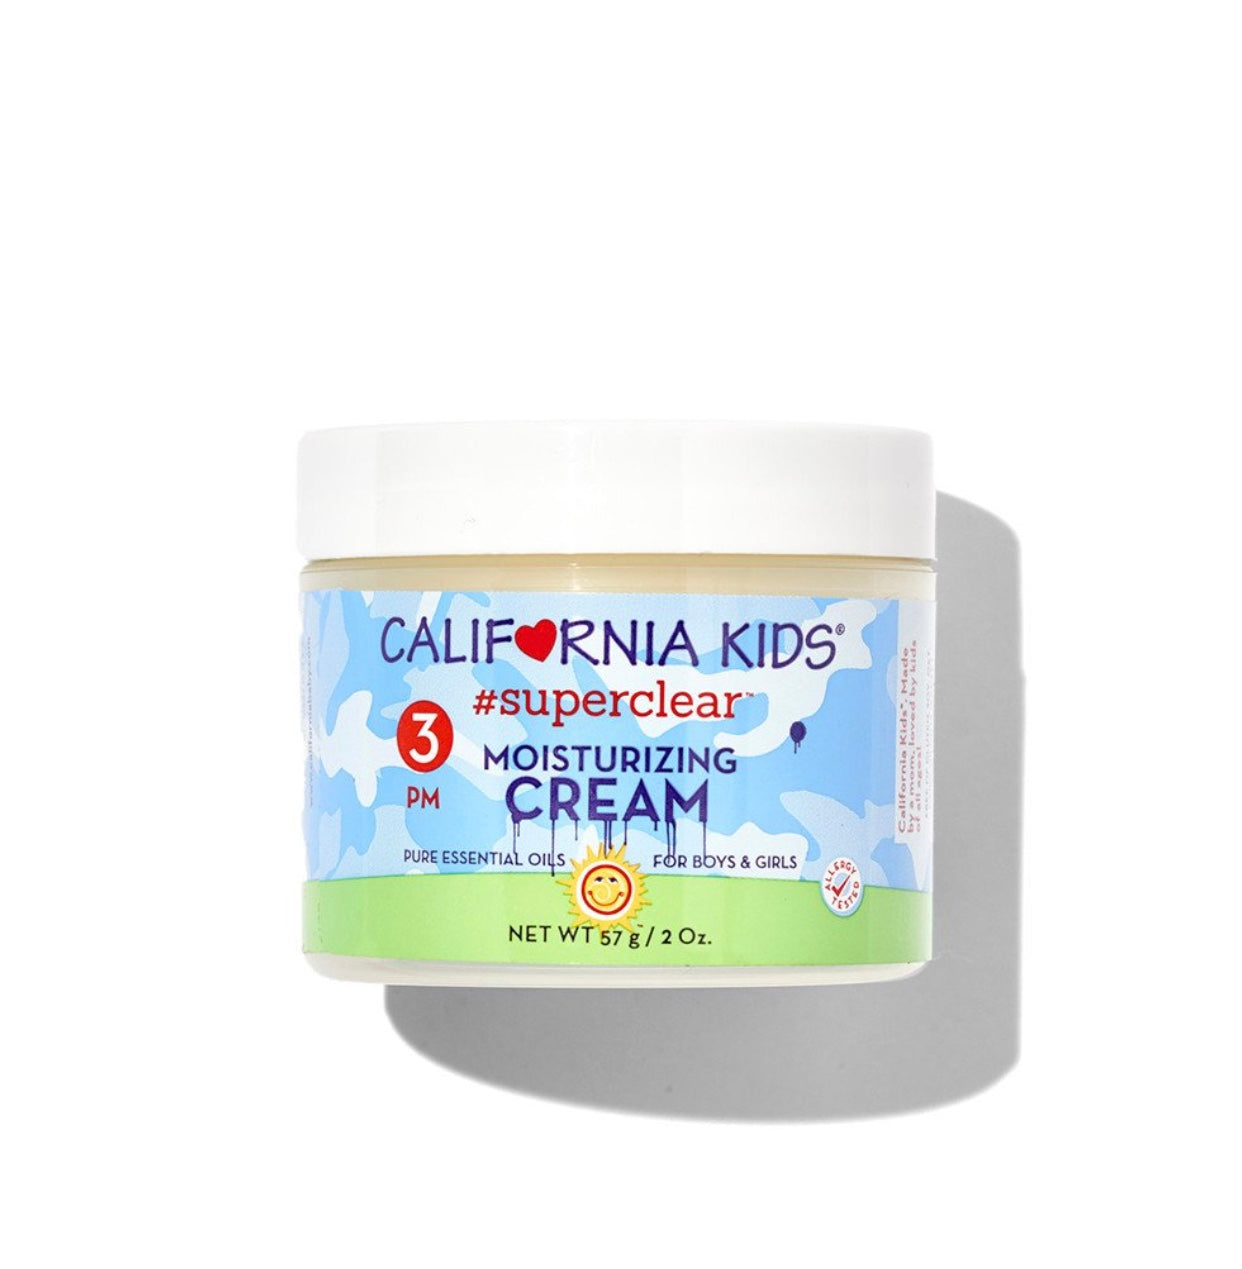 California Kids Super clear moisturizer